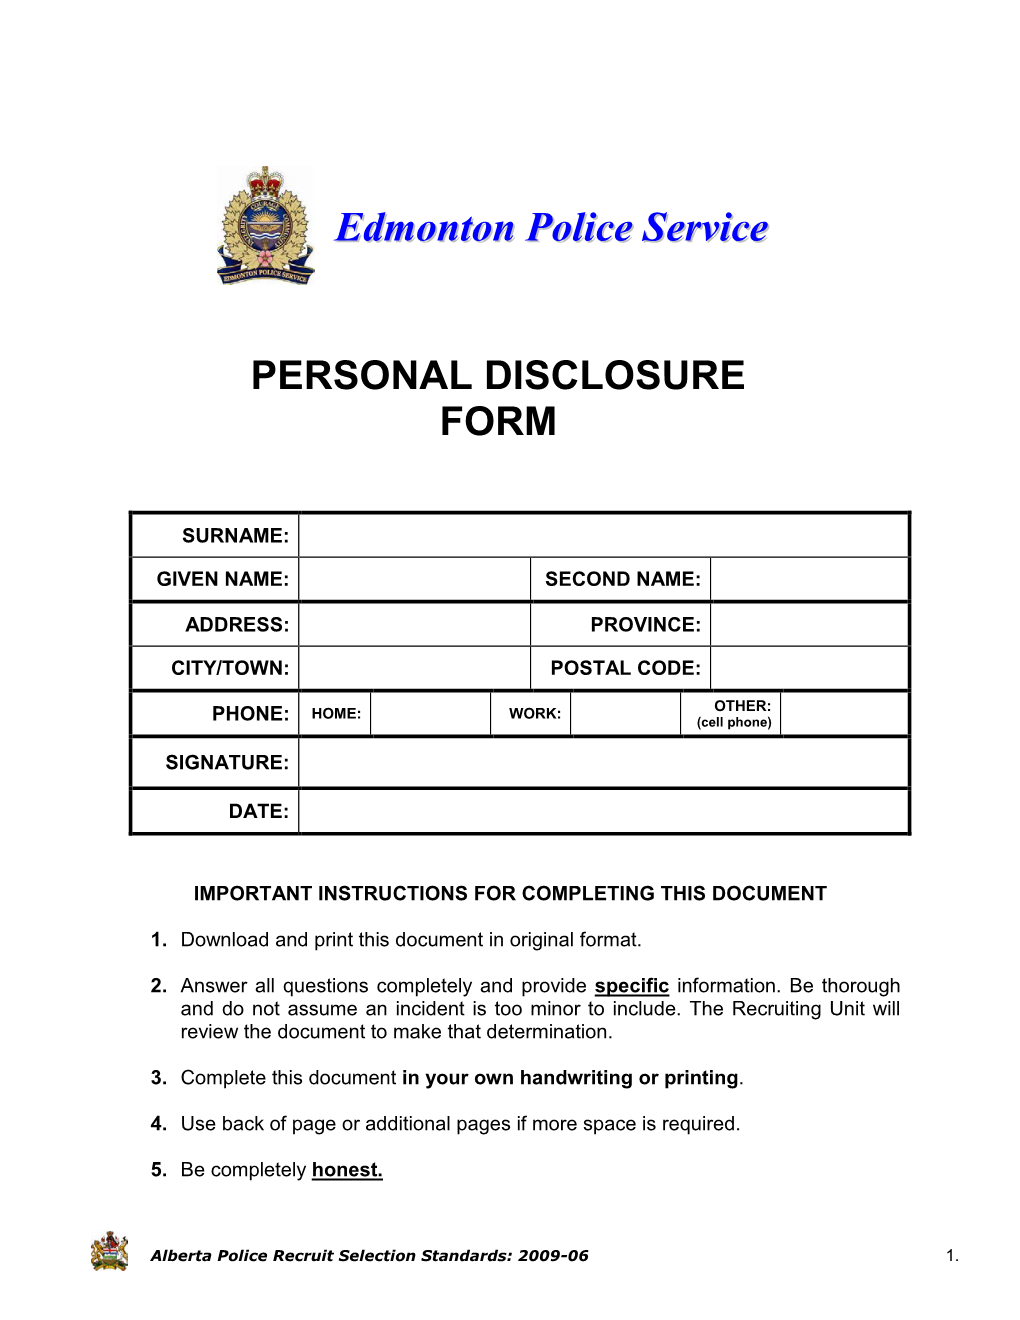 Edmonton Police Service Recruiting